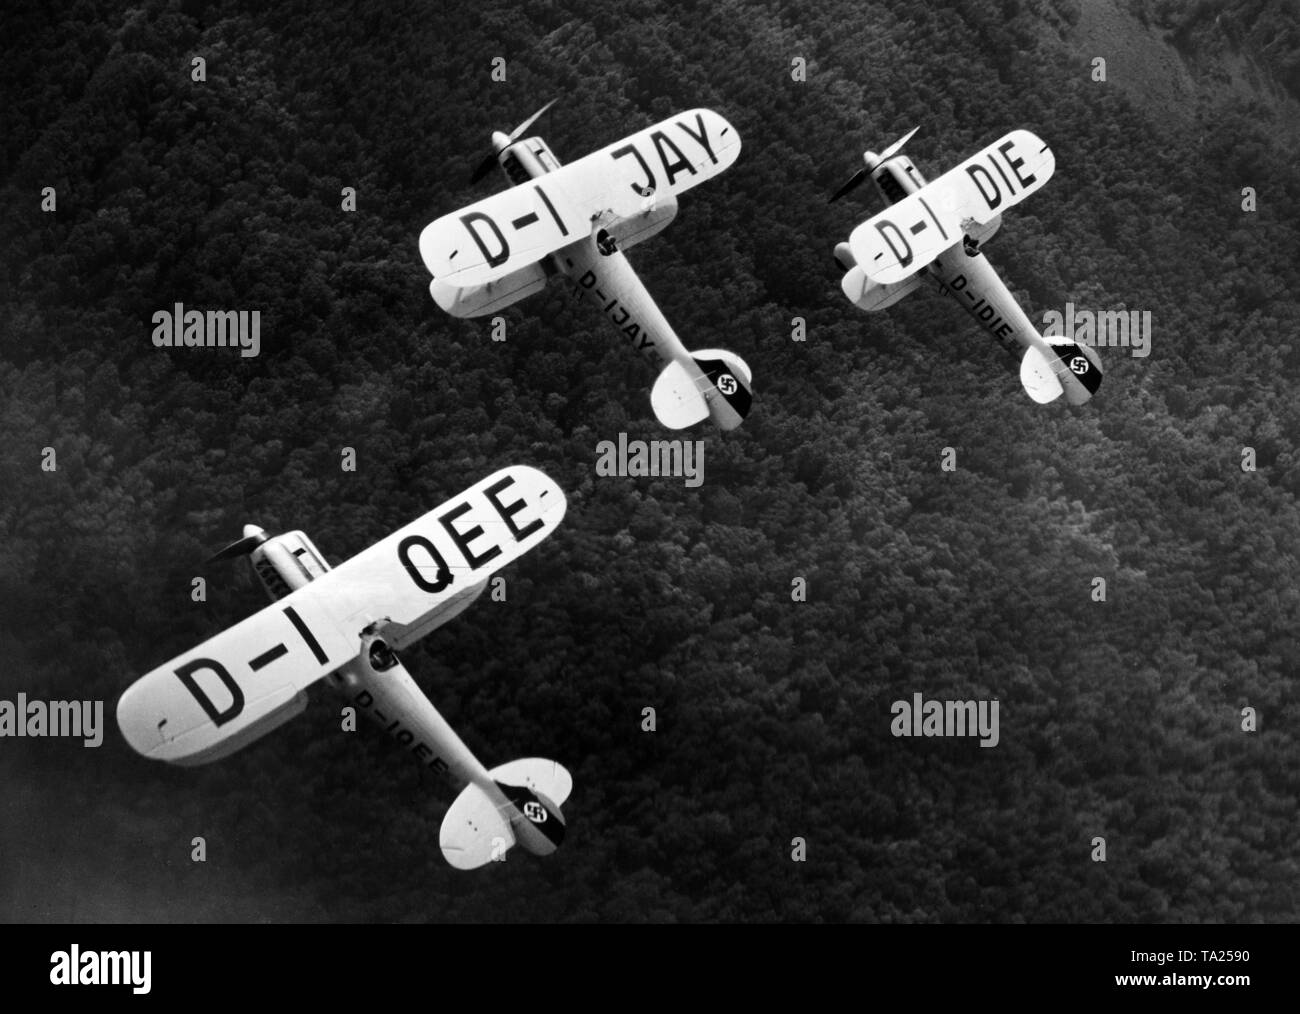 Drei Flugzeuge vom Typ Heinkel He 51 während einer Ausbildung Flug des Jagdgeschwader "richthofen". Die Er51 war zwischen 1934 und 1937 produziert, ab 1936 wurde zum Teil von der Arado Ar 68 ersetzt und ab 1937 intensiv von der Messerschmitt Bf 109 als Standard Kampfflugzeuge ersetzt. Das Bild ist aus der Serie: "Ein Tag am Jagdgeschwader Richthofen'. Zu dieser Zeit ist das fliegergeschwader Doeberitz erhielt die Auszeichnung 'Richthofen', erhielt aber der endgültige Name JG 2 "richthofen" nur auf 1.5.1939, unter dem er später im Zweiten Weltkrieg beteiligt. Stockfoto